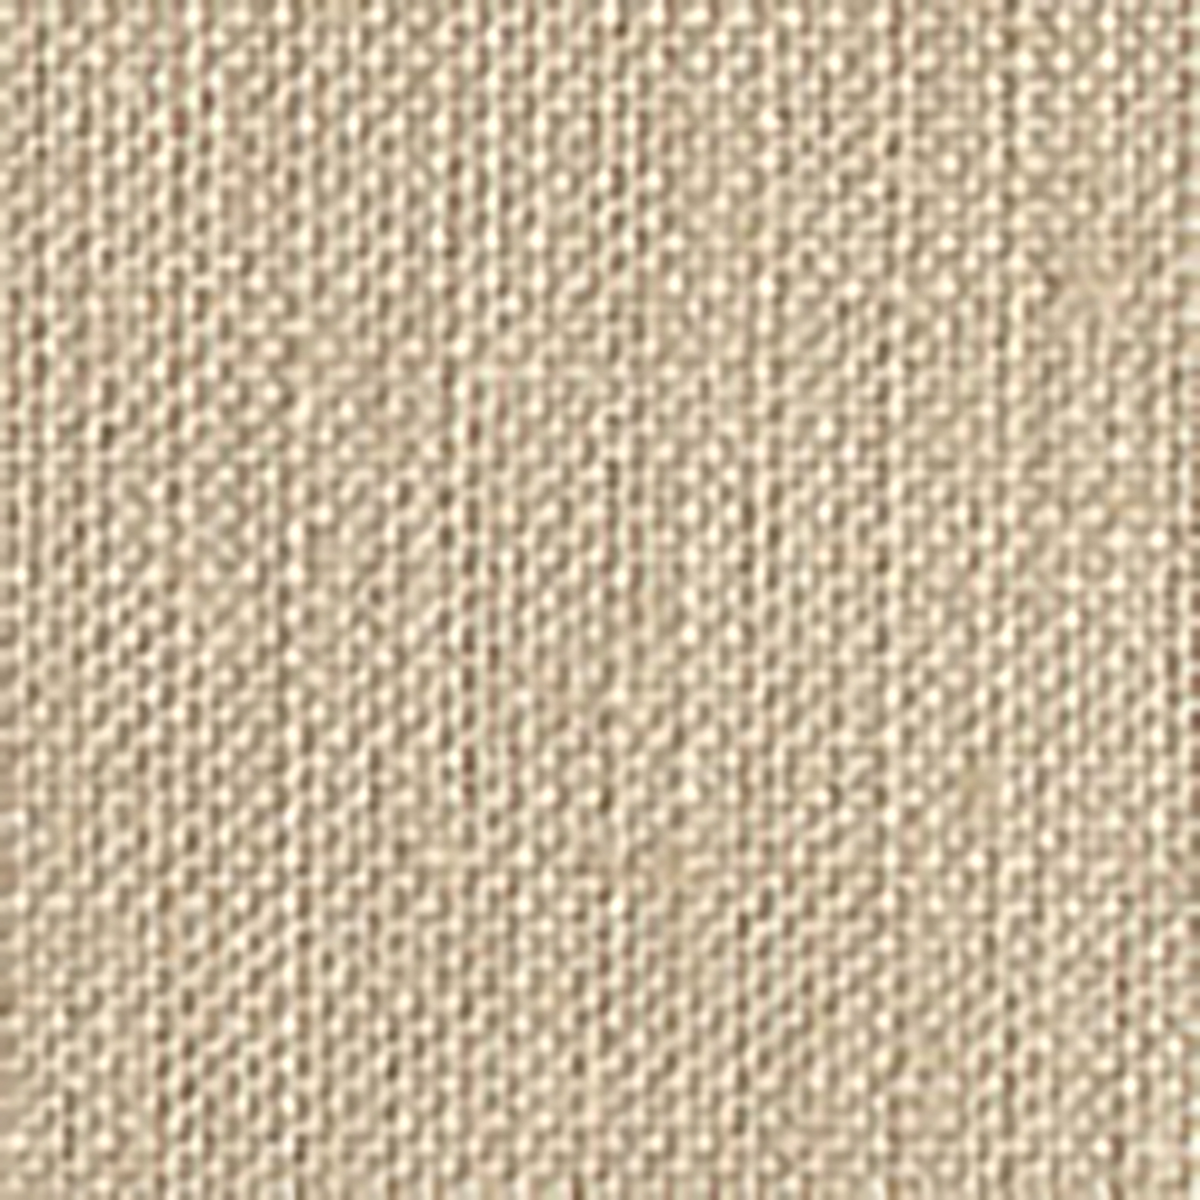 Swatch Sample of Oat Matouk Chelsea Linen Tissue Box Cover